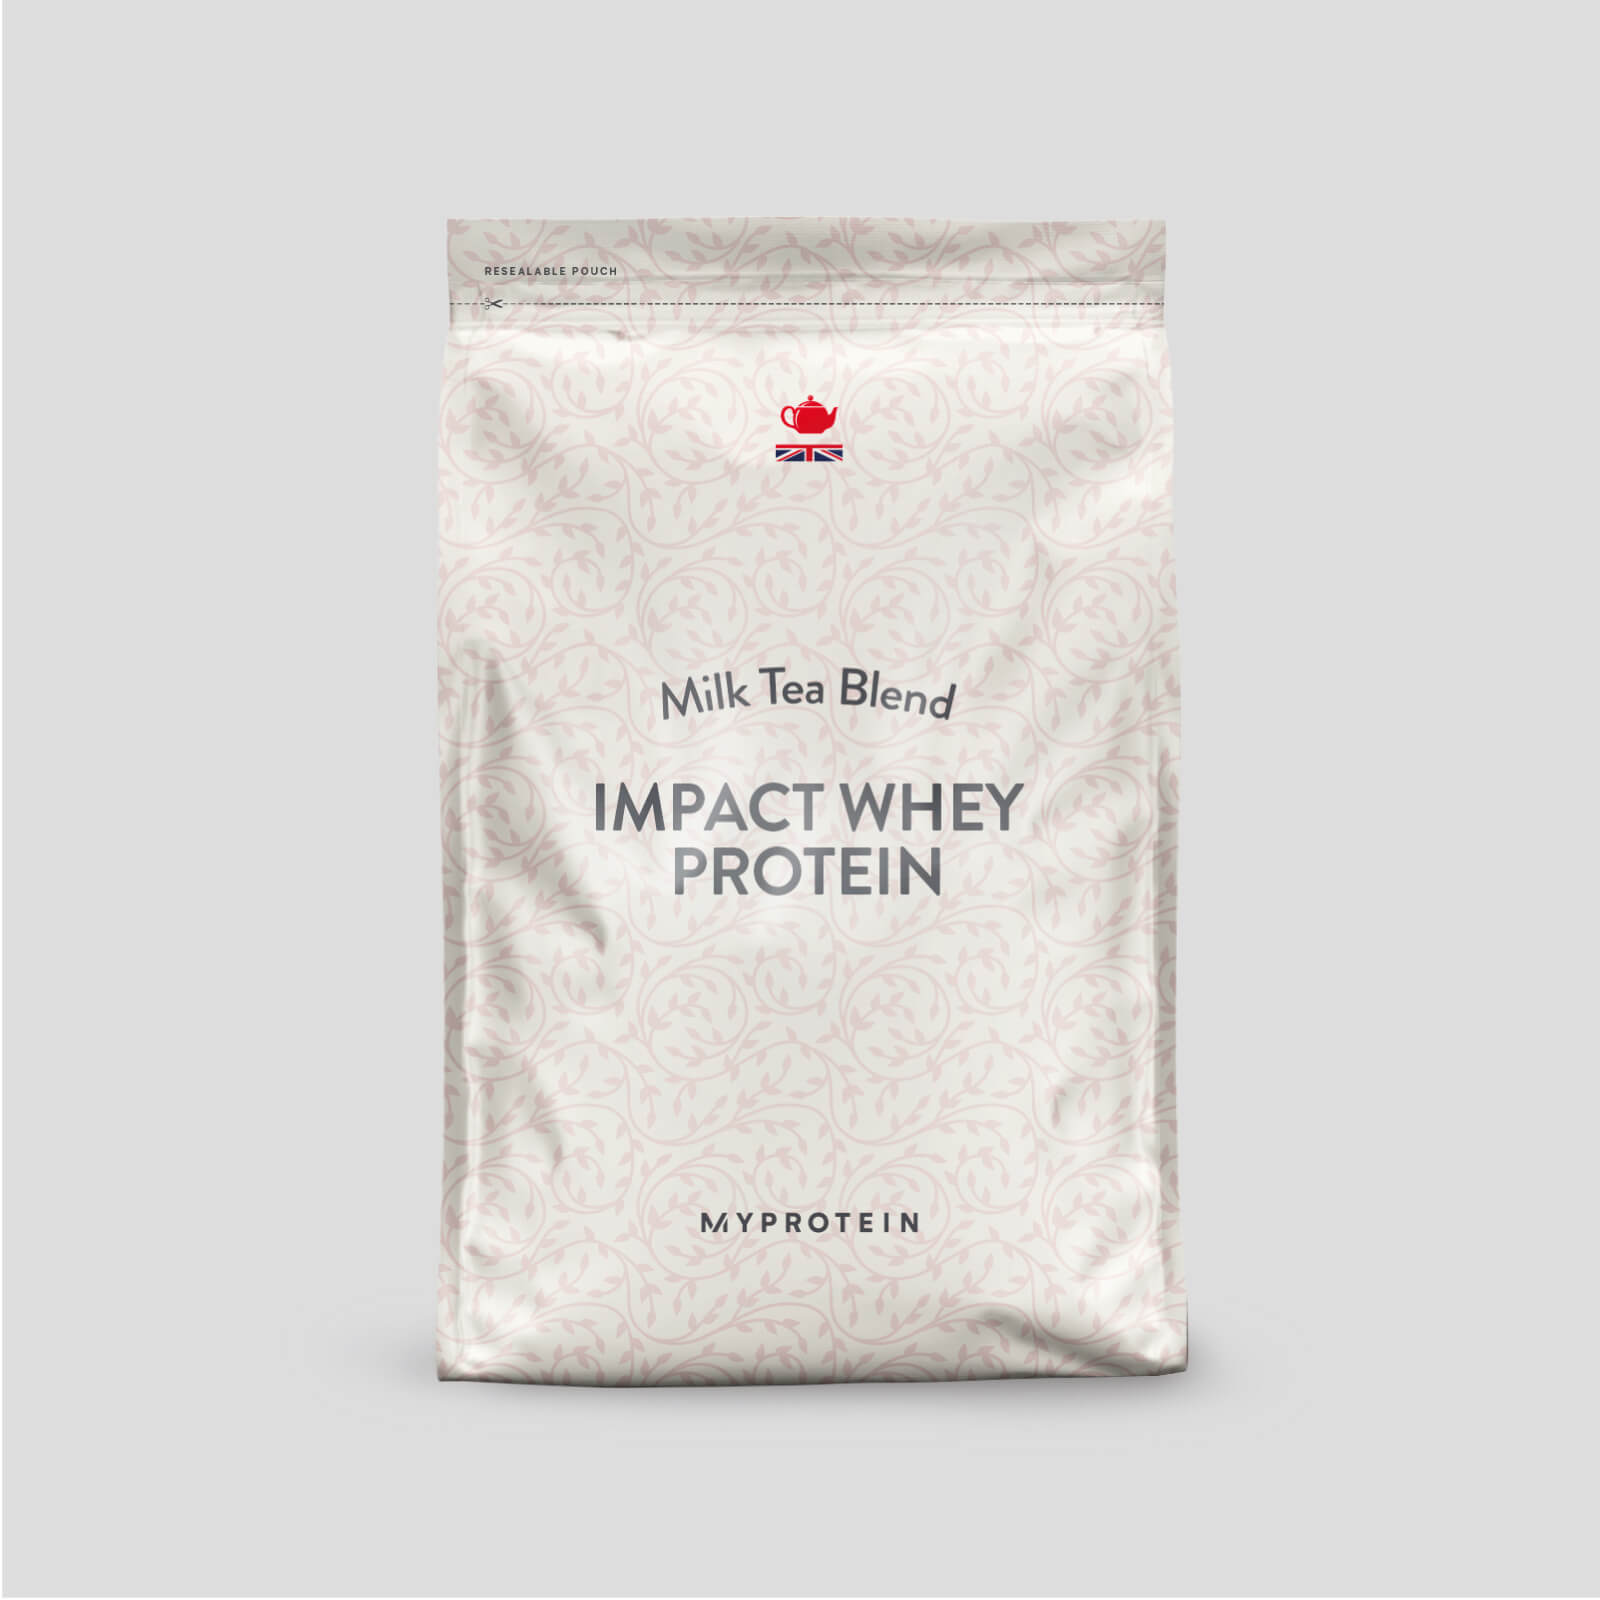 Impact Whey Protein - Milk Tea - 250g - Milk Tea